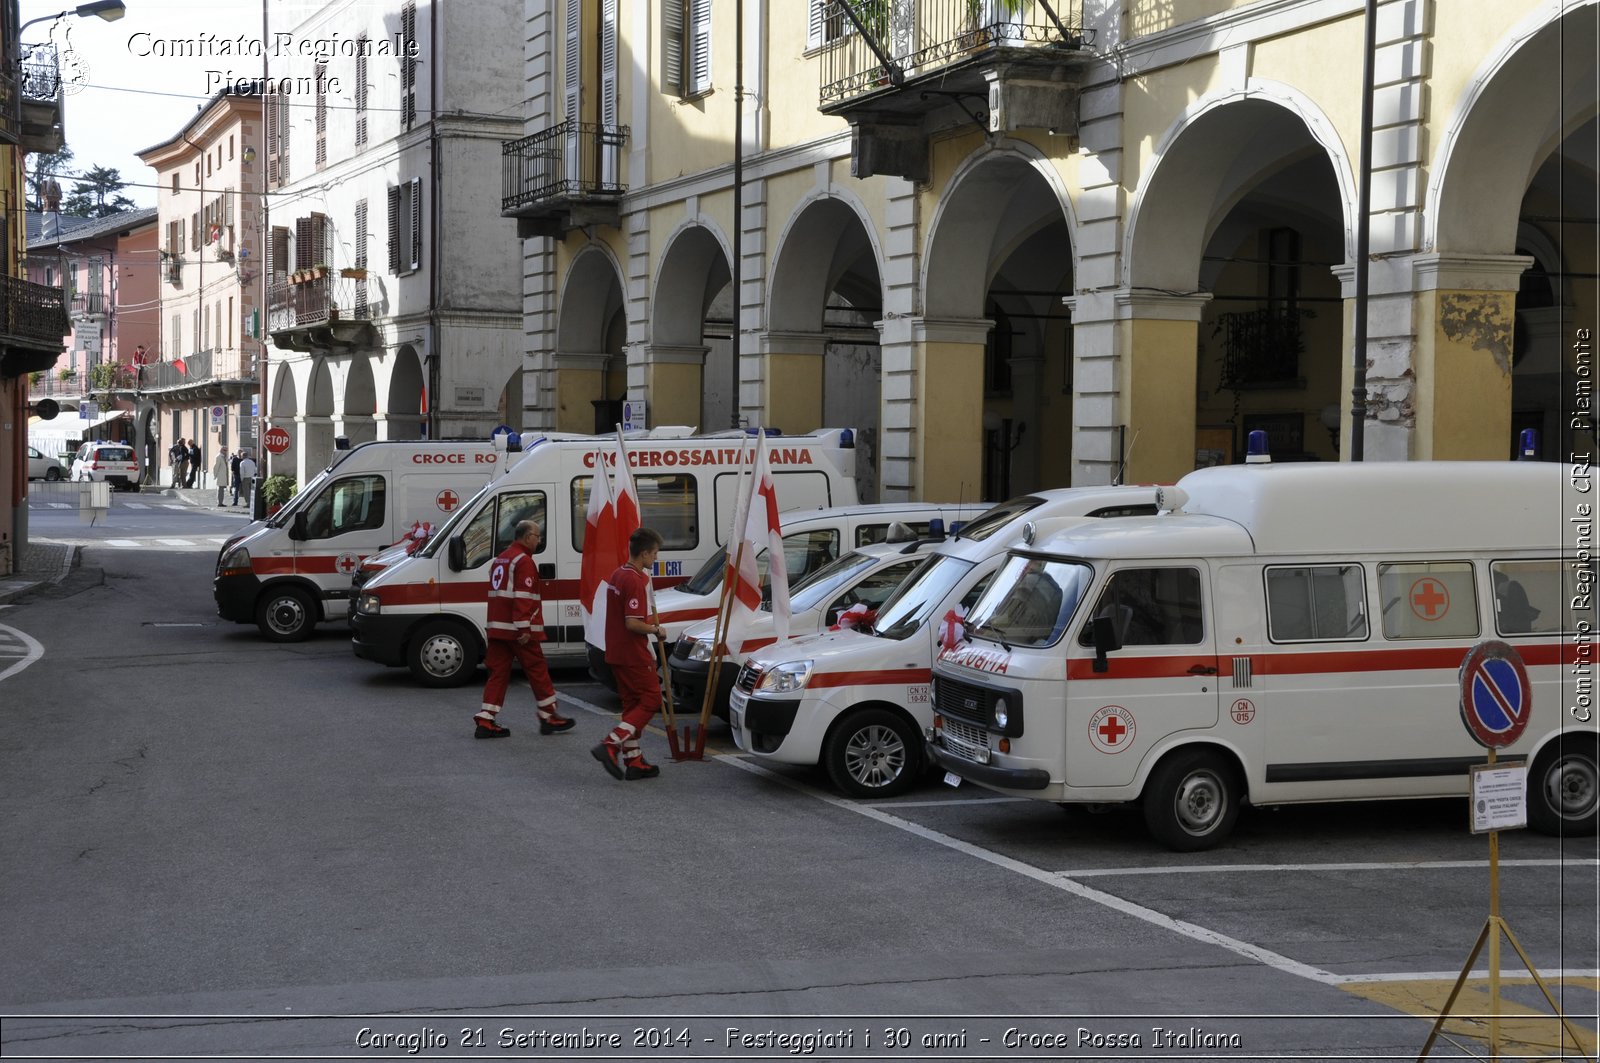 Caraglio 21 Settembre 2014 - Festeggiati i 30 anni - Croce Rossa Italiana- Comitato Regionale del Piemonte